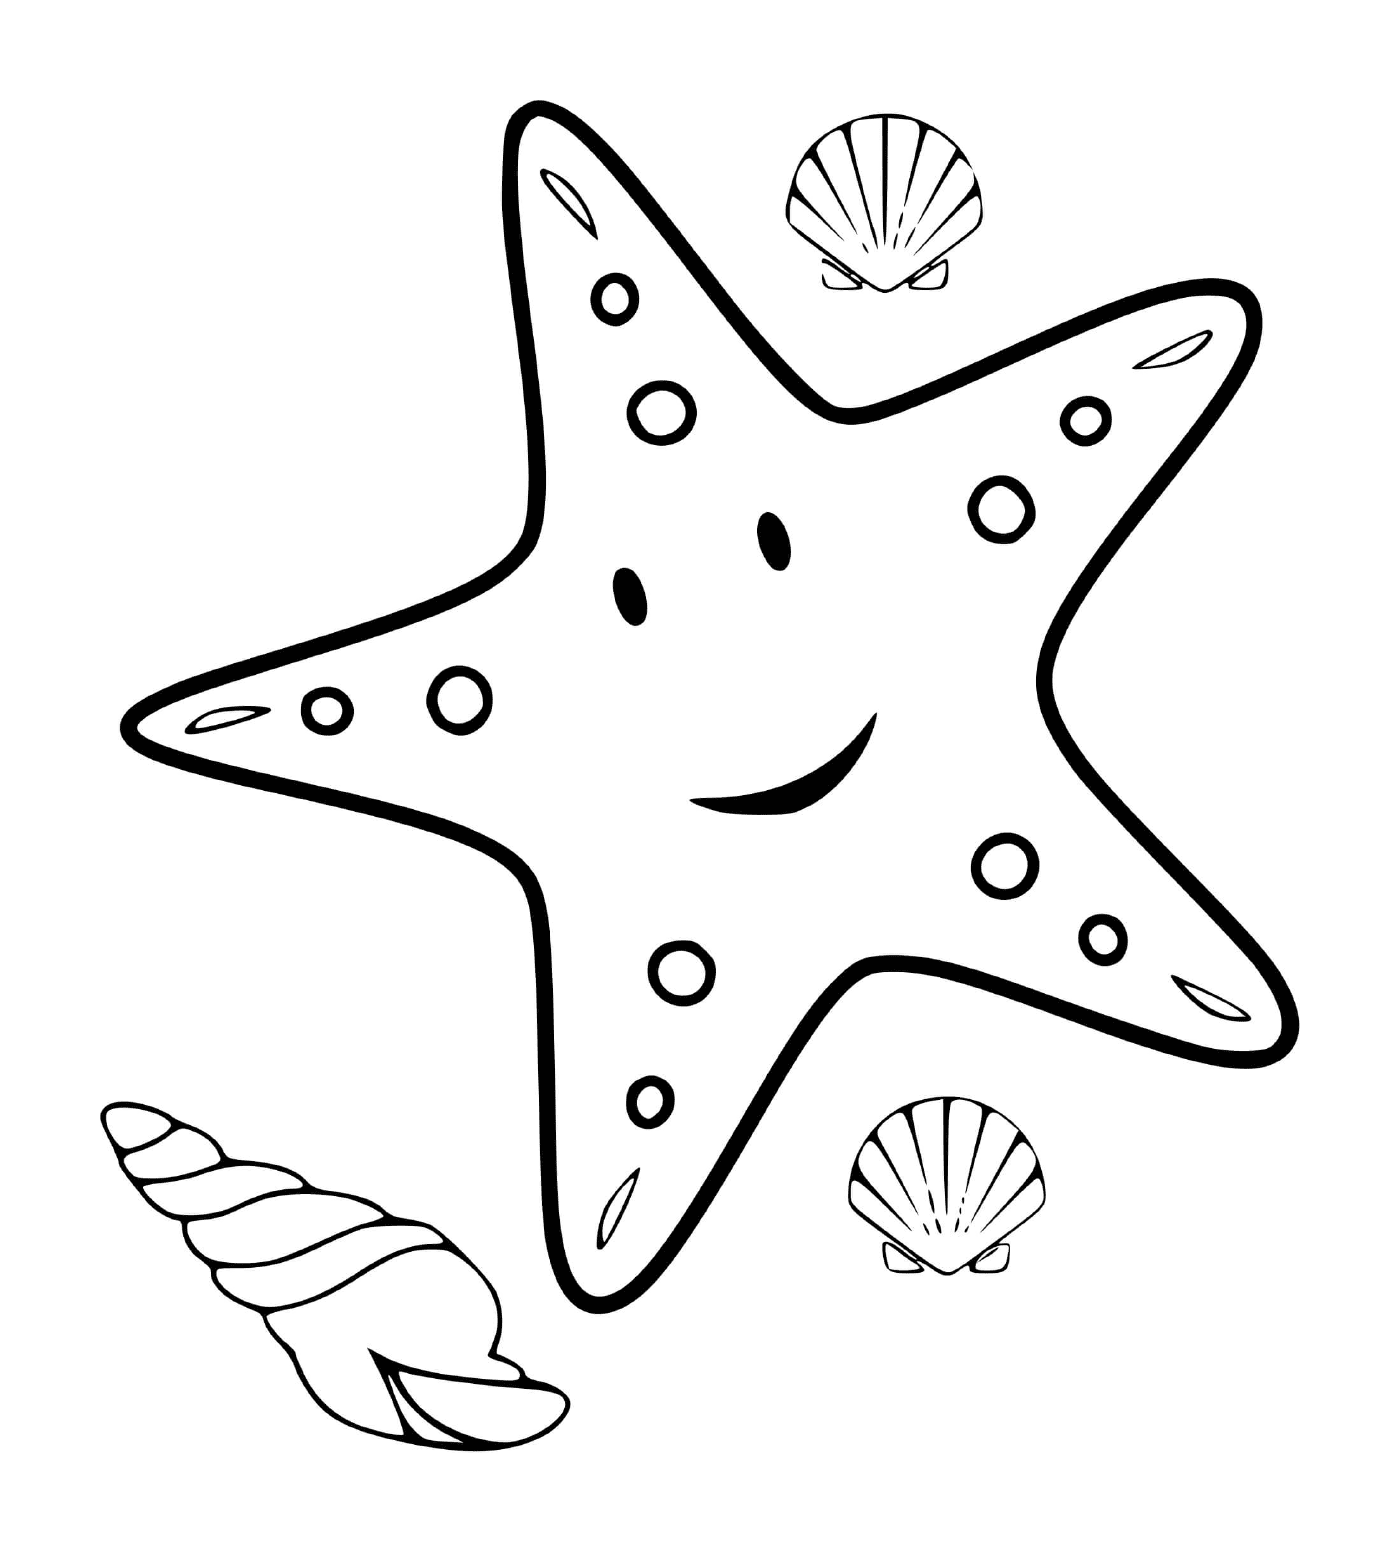  Una estrella de mar acompañada de conchas marinas 